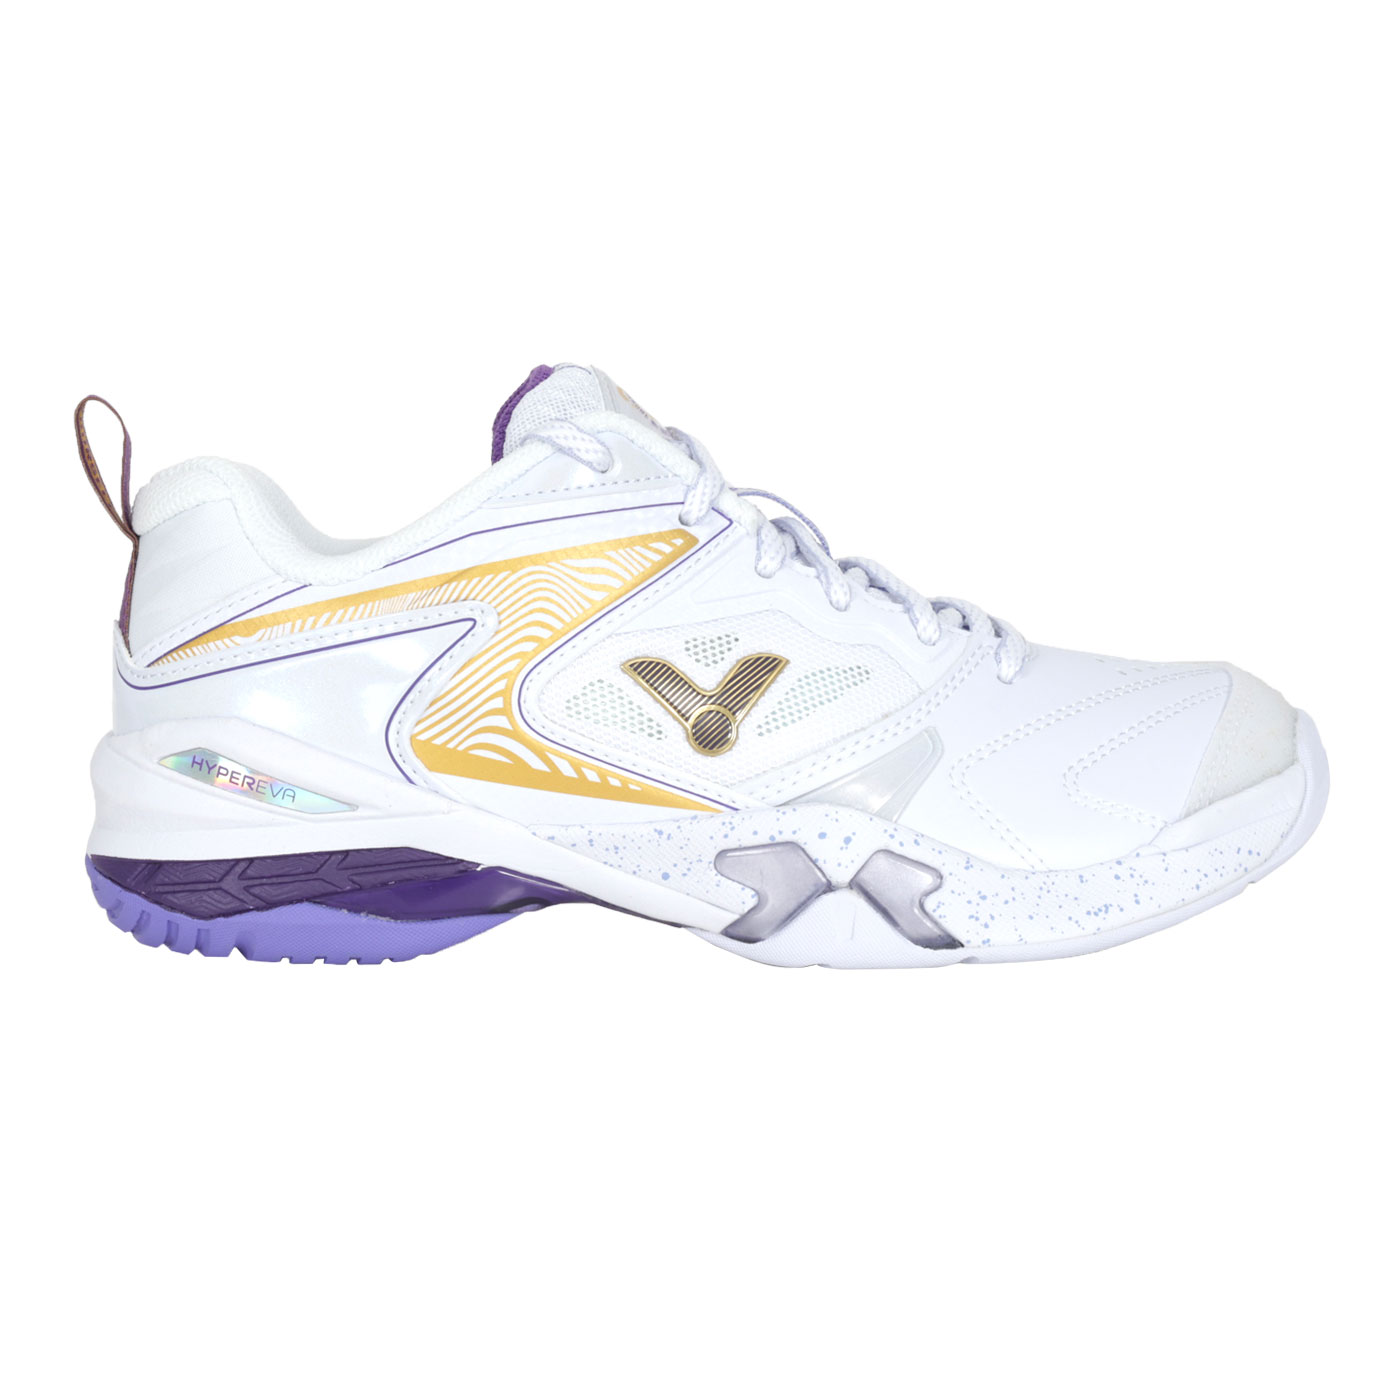 VICTOR 女款專業羽球鞋-3E  P9200TTY-A - 白金紫